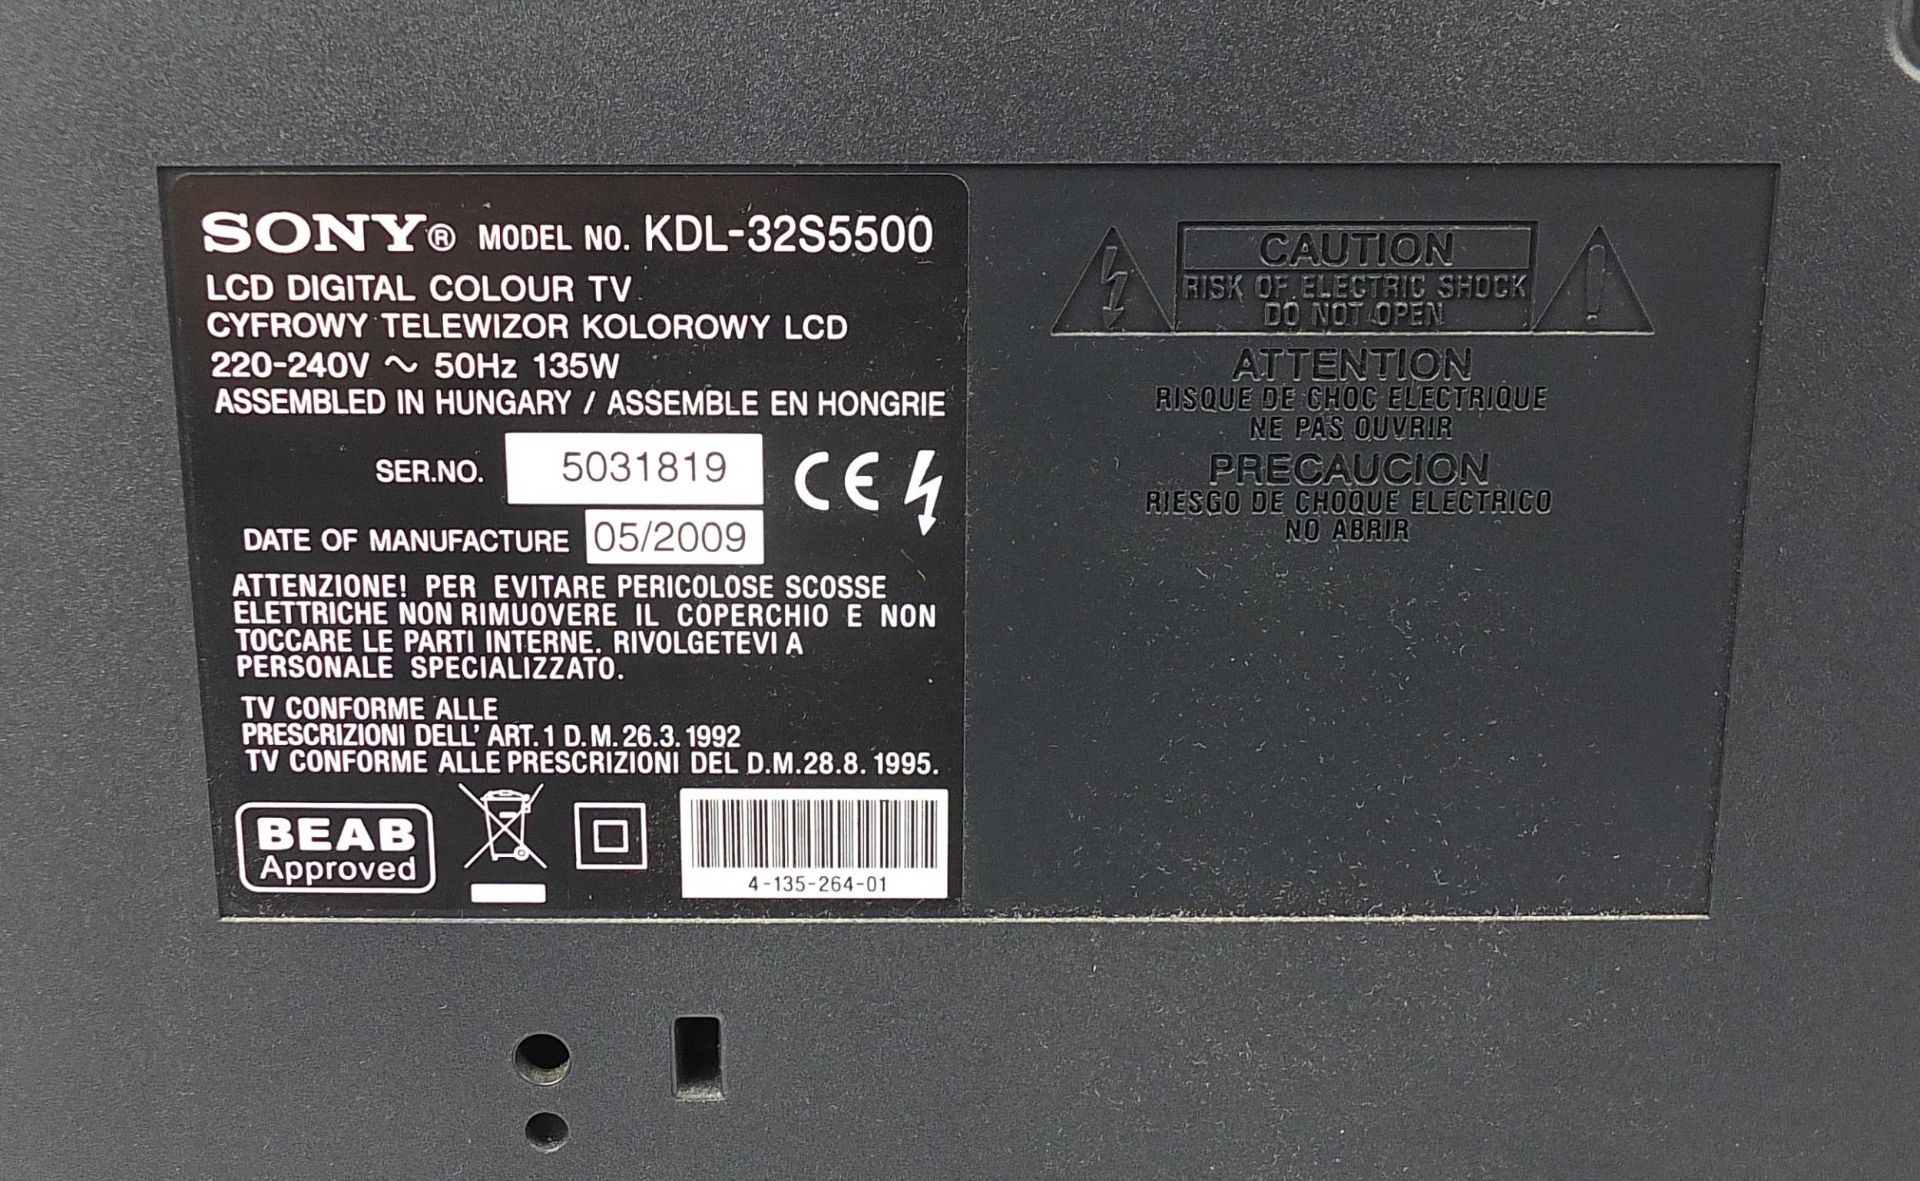 Sony Bravia 32 inch LCD TV, model KDL-32S5500 - Image 4 of 4